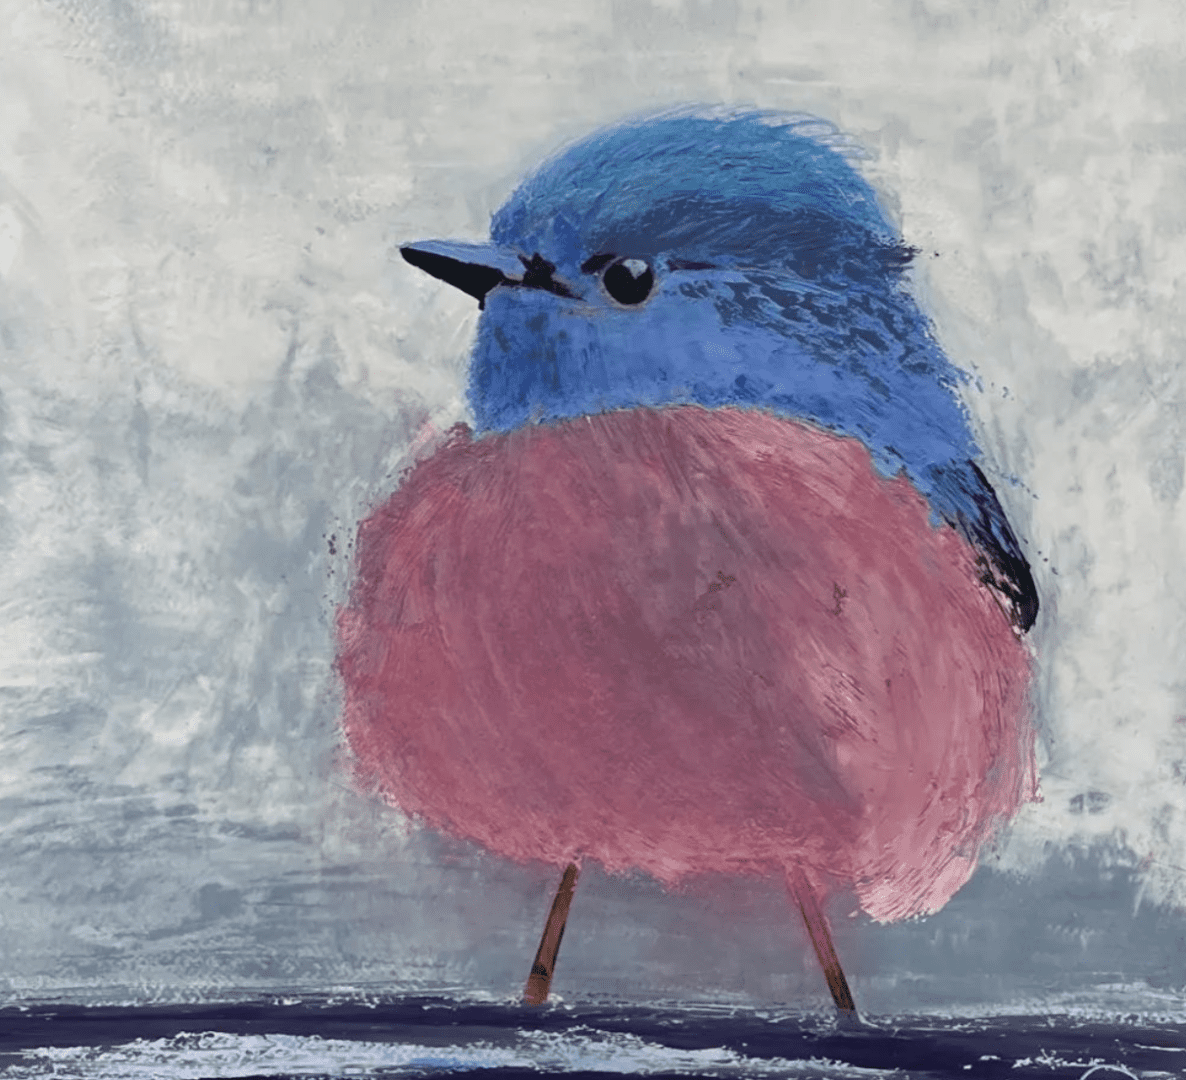 An art of a blue and pink bird.